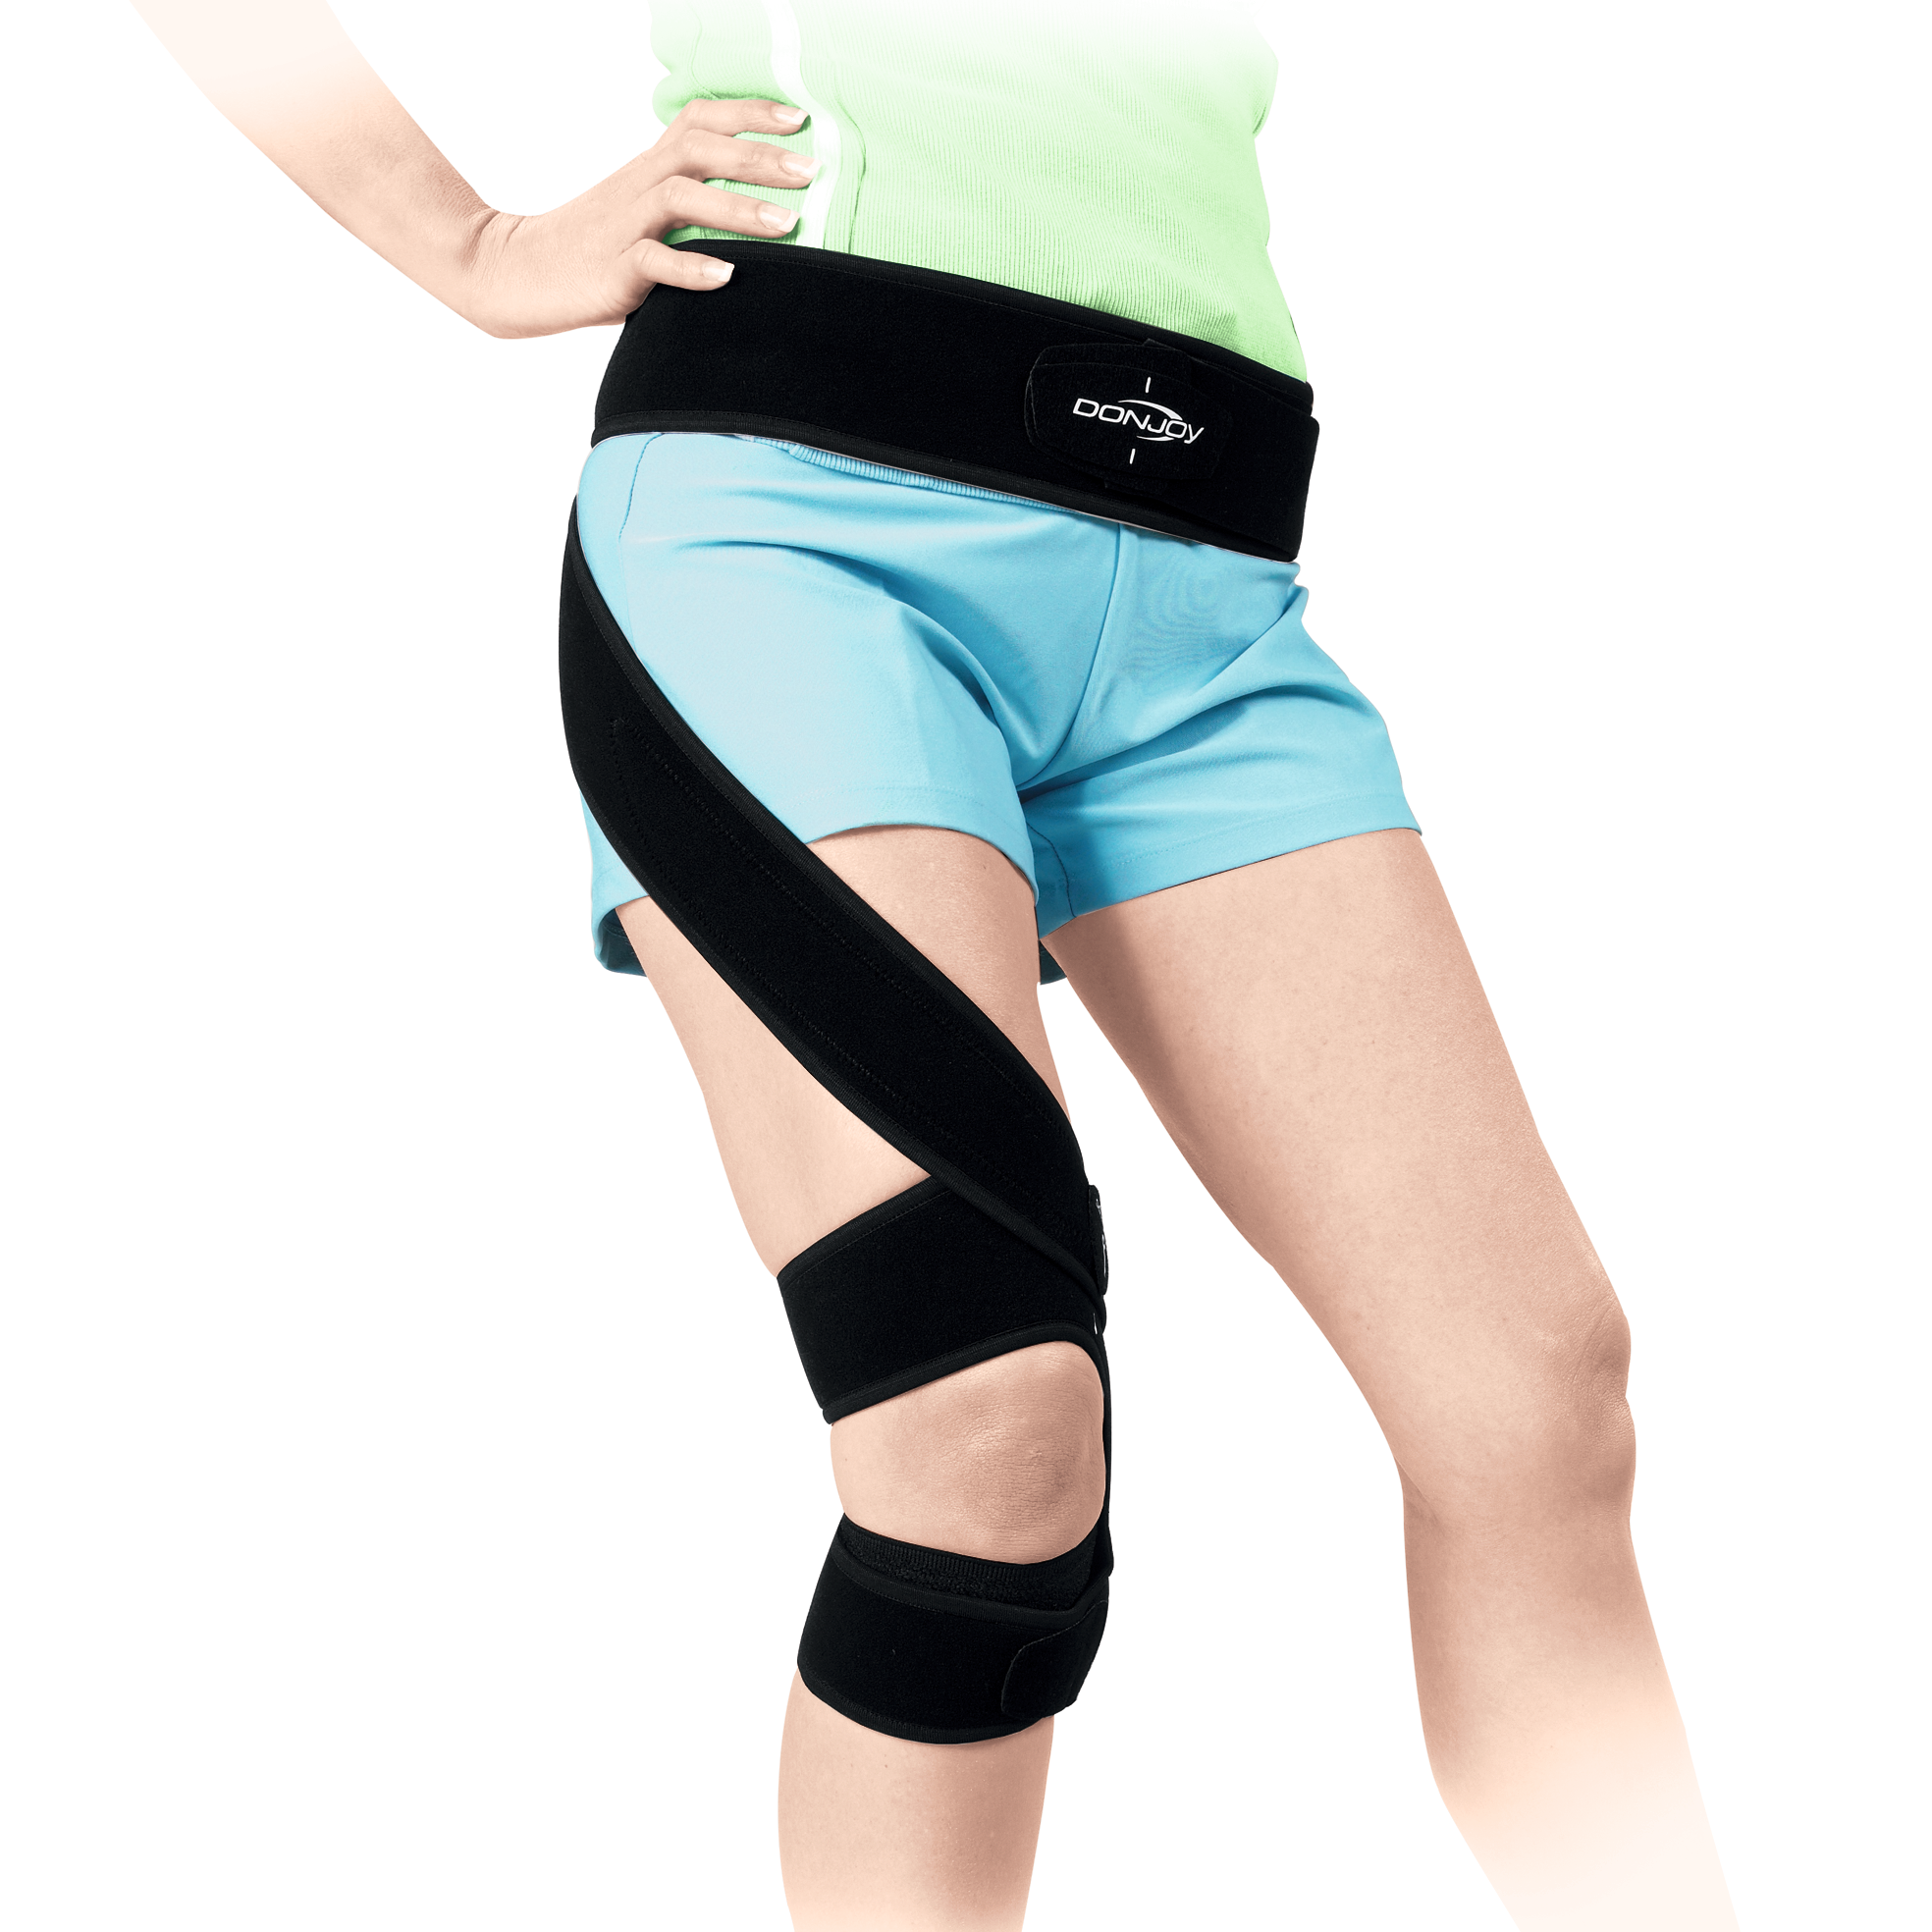 Produktbild DONJOY® S.E.R.F. Strap™, Elastischer Gurt zur Außenrotation des Beines bei pathologischer Innenrotation im Hüftgelenk (Toe-in-Position)